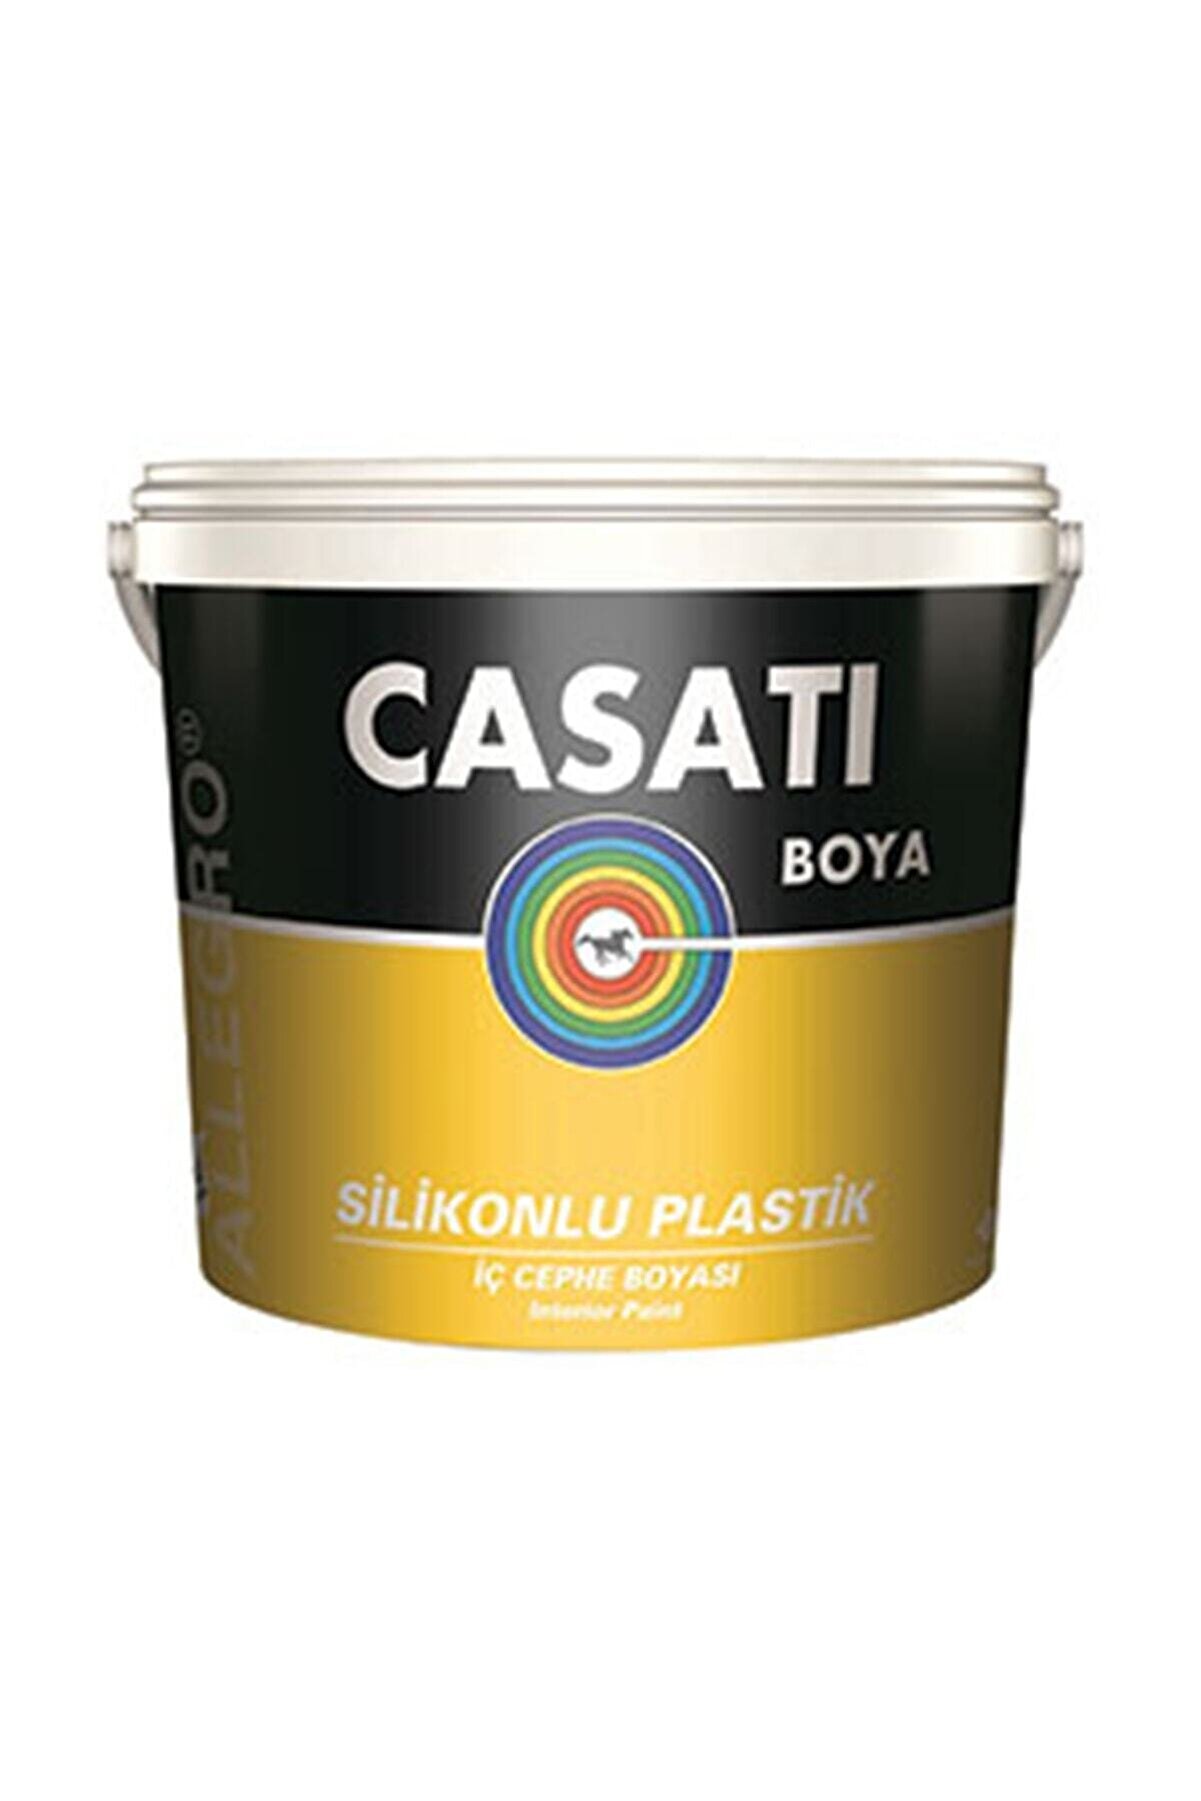 Casati Allegro Silikonlu Plastik Su Bazlı Iç Cephe Boyası Orkide 3,5 Kg